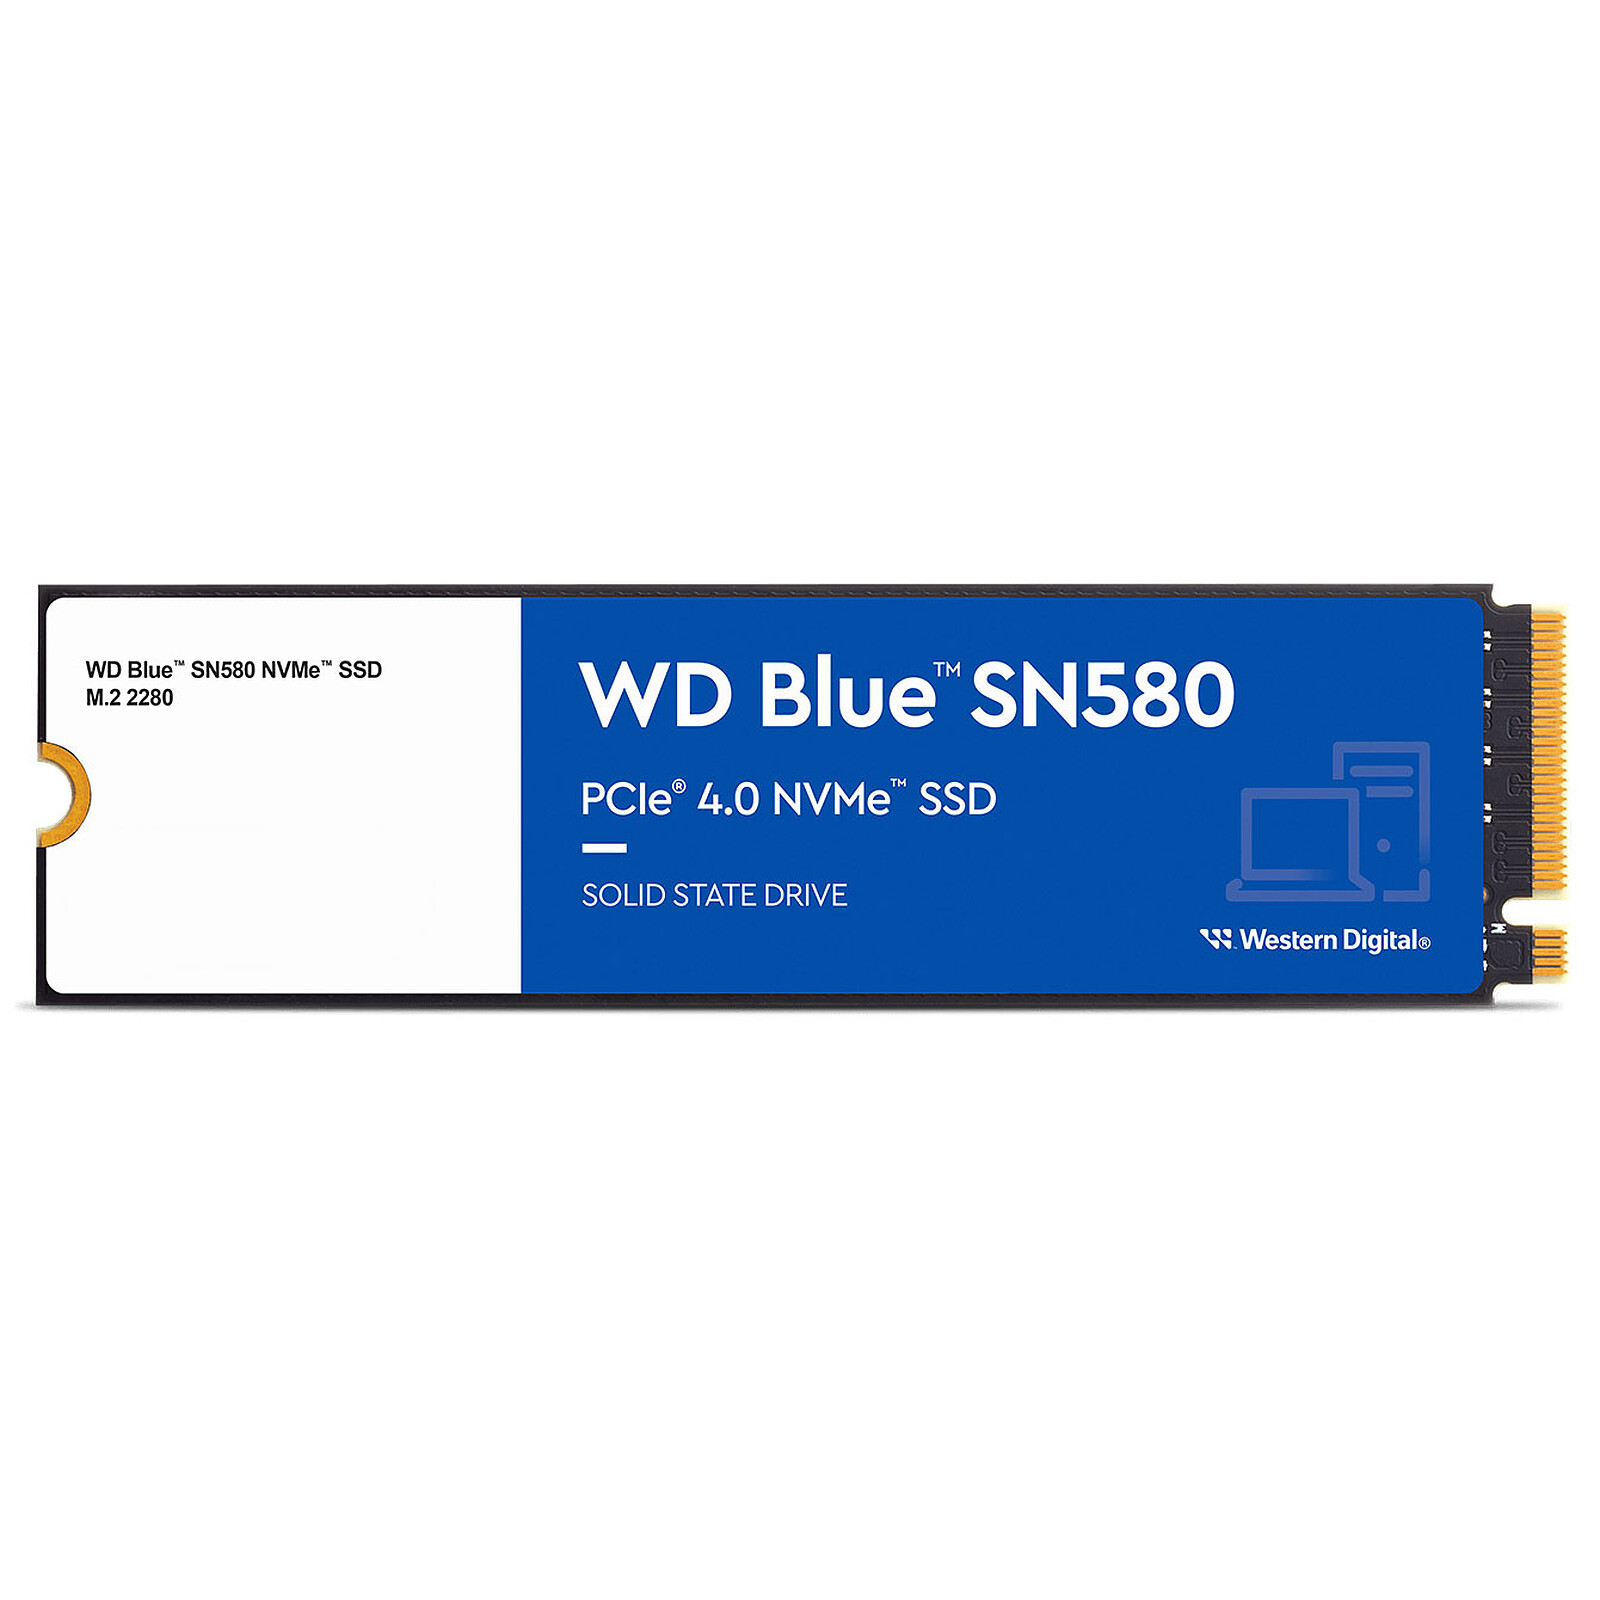 SSD Crucial T500 M.2 2 To PCI Express 4.0 TLC NVMe avec dissipateur  thermique